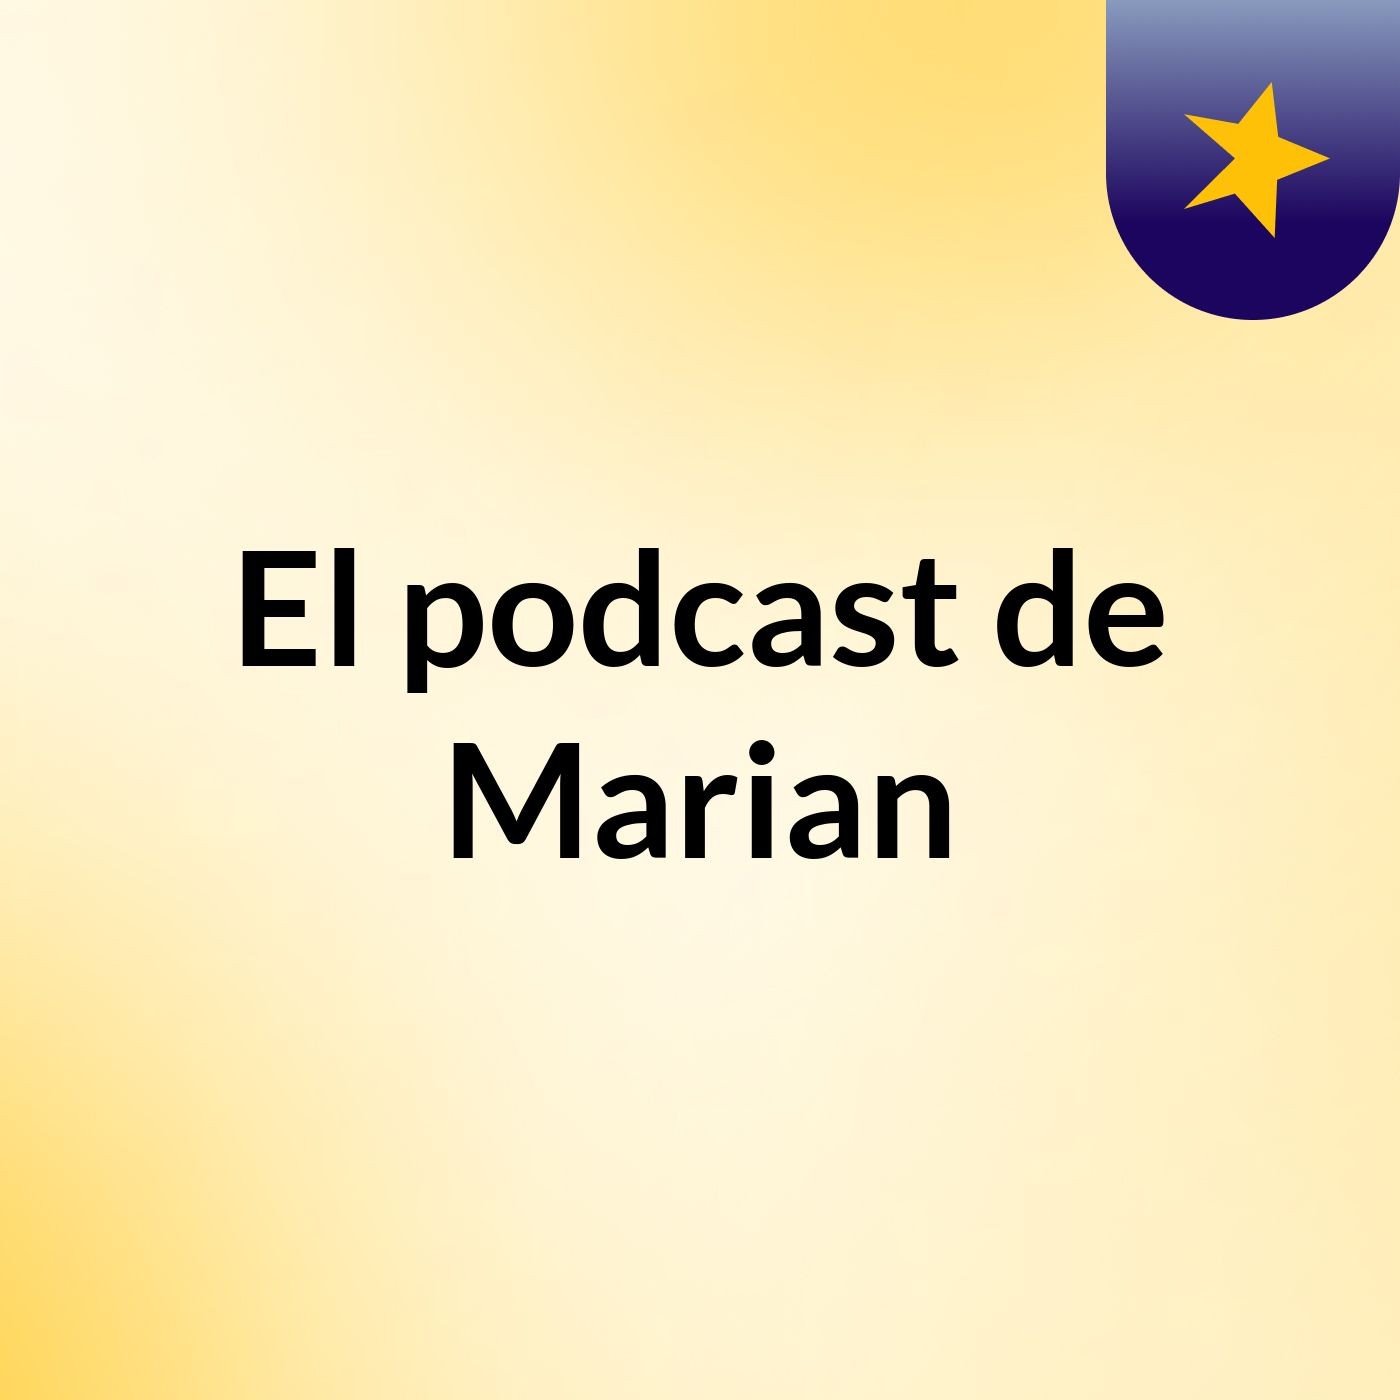 El podcast de Marian